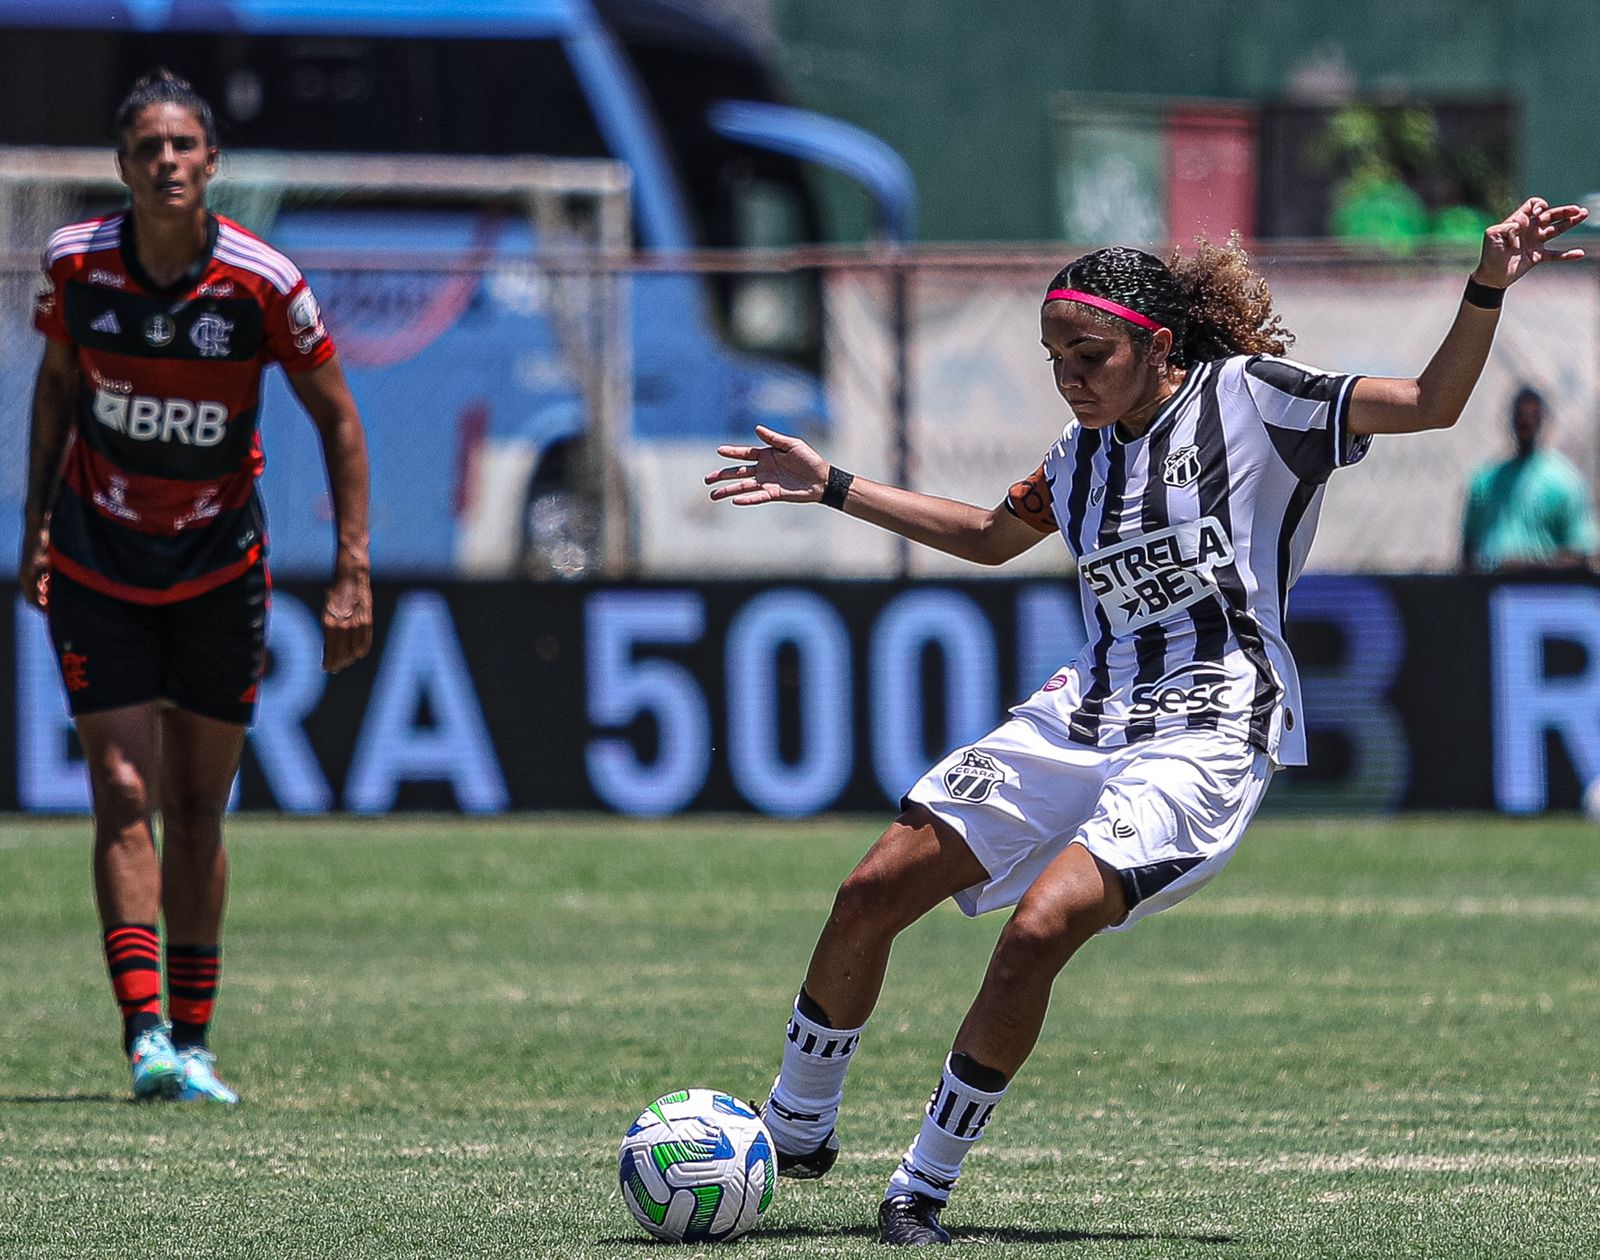 Fut. Feminino: No Rio de Janeiro, Ceará para no Flamengo e deixa a Supercopa